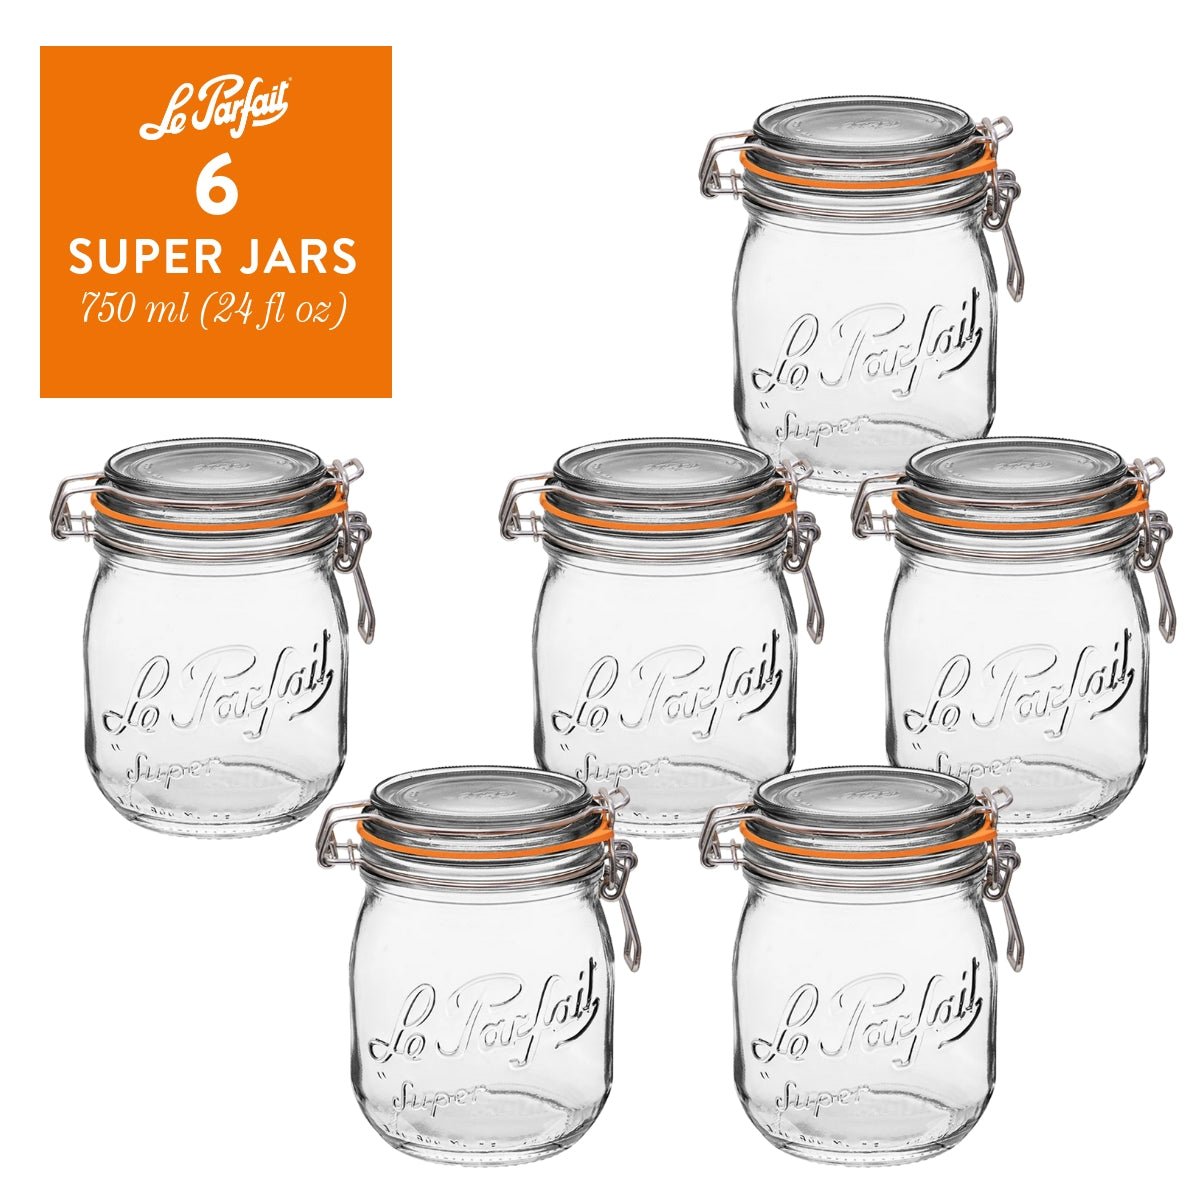 Le Parfait Super Jars – Le Parfait America